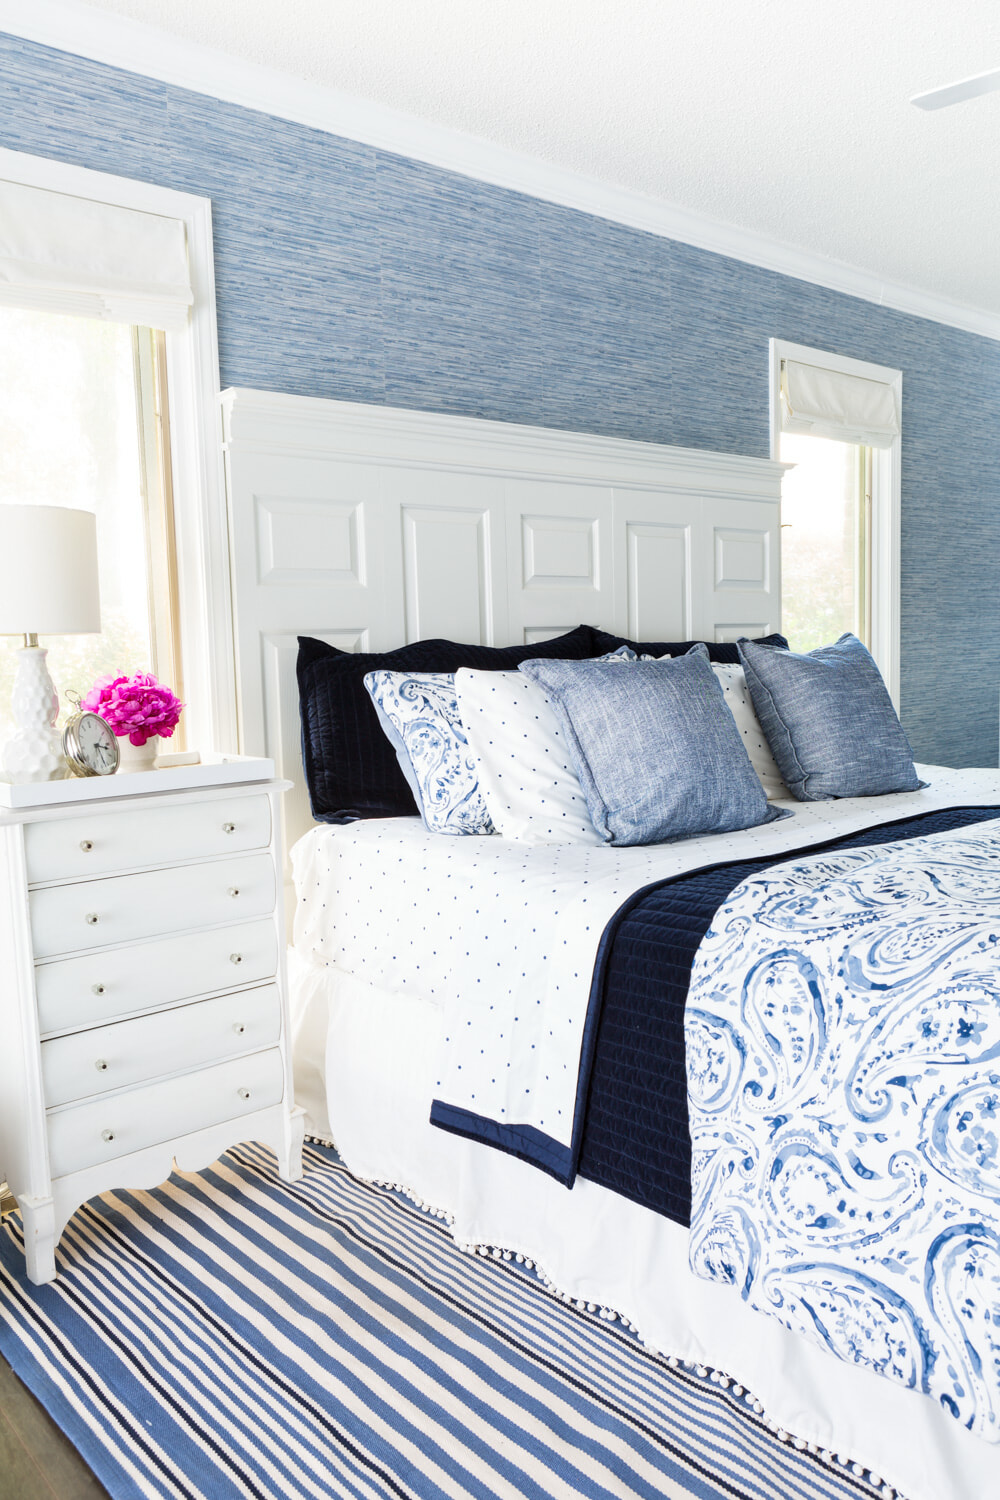 Dormitorio decorado con paleta de colores azul y blanco.